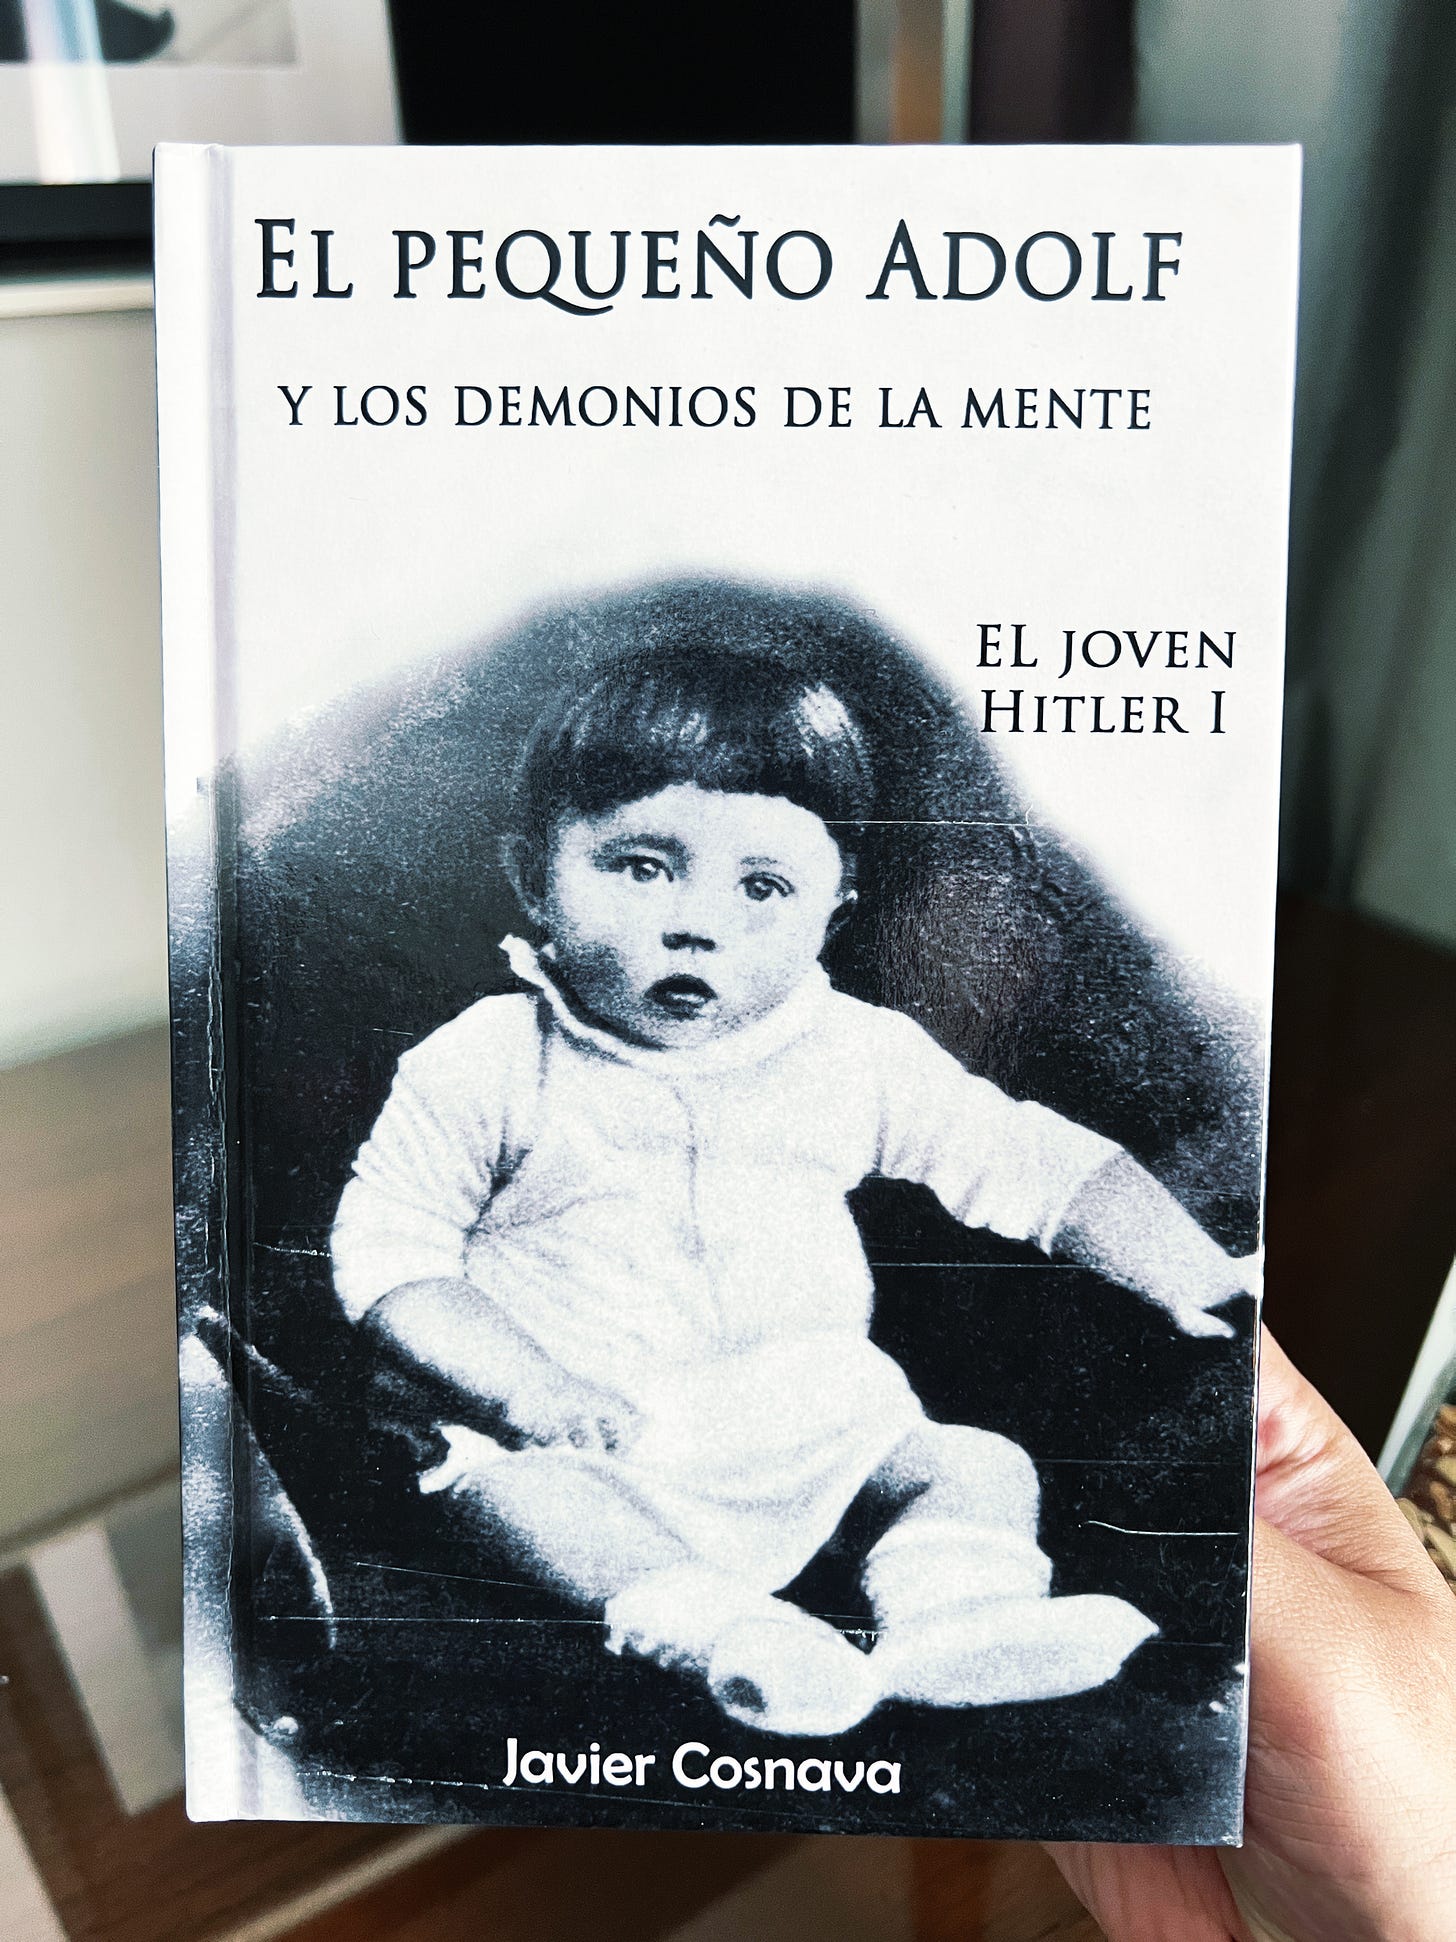 Review: El pequeño Adolf y los demonios de la mente, Javier Cosnava